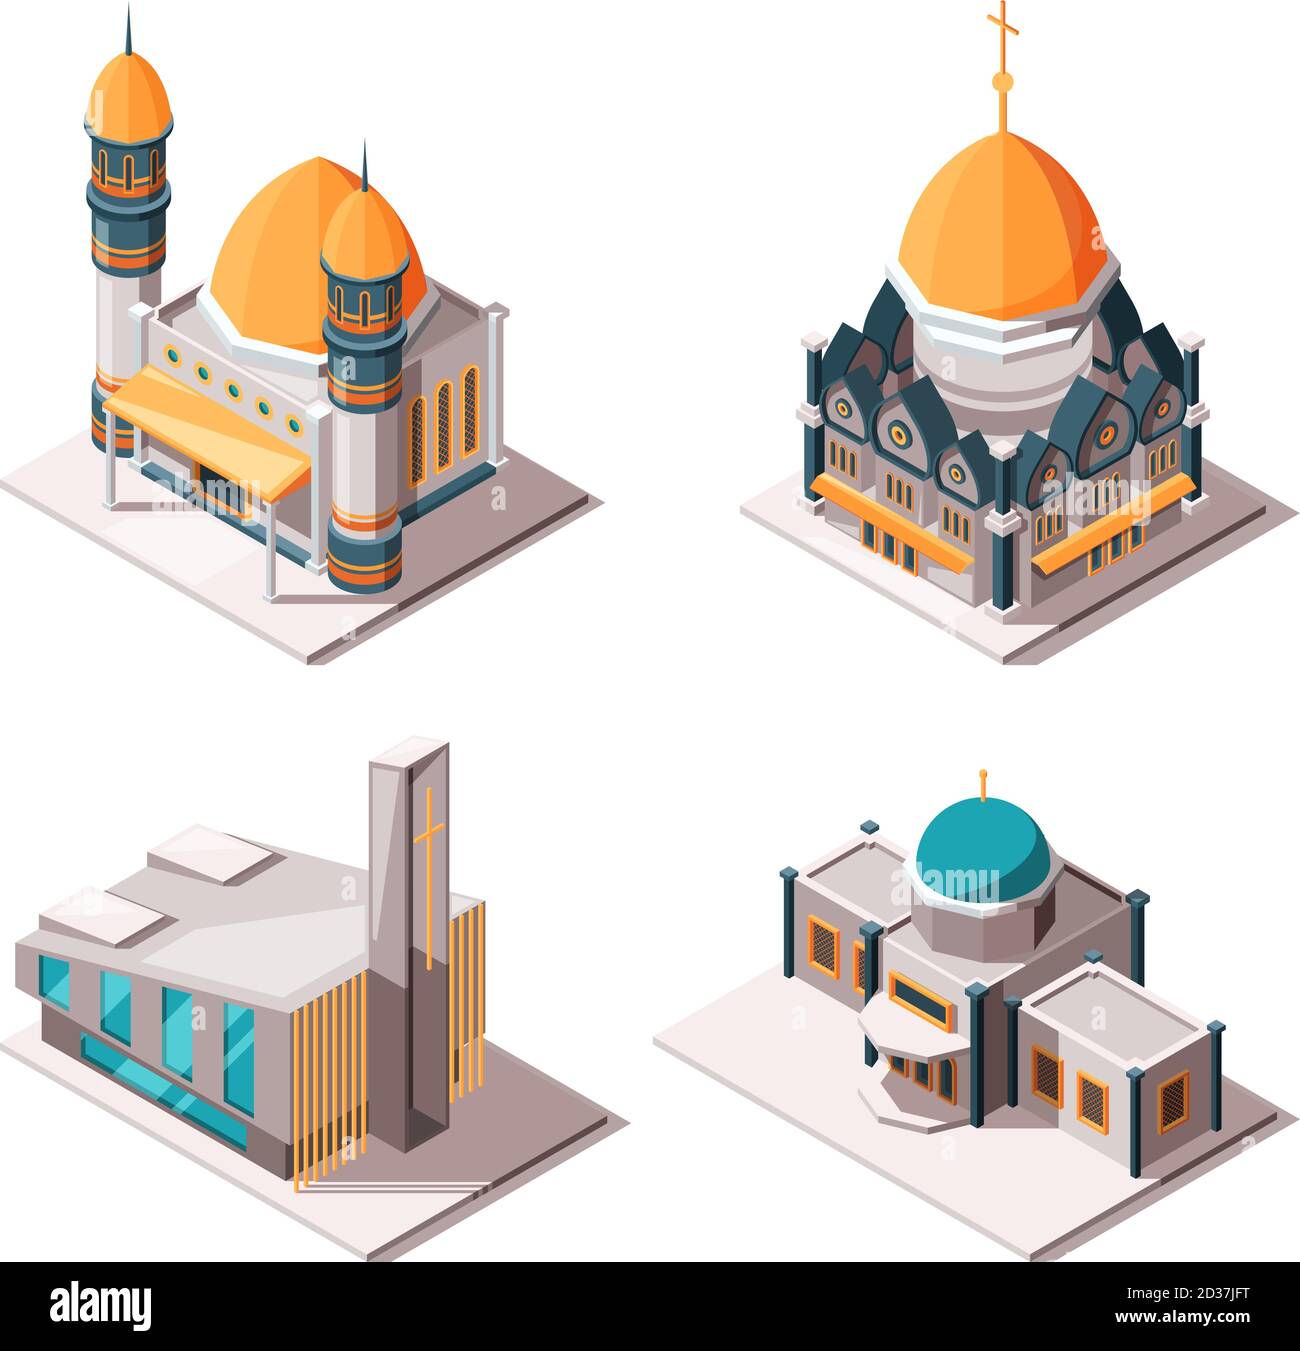 Religiöse Gebäude. Muslimische Moschee lutherische Kirche christliche und katholische Kultur traditionelle Religion isometrische Vektor-Objekte Stock Vektor